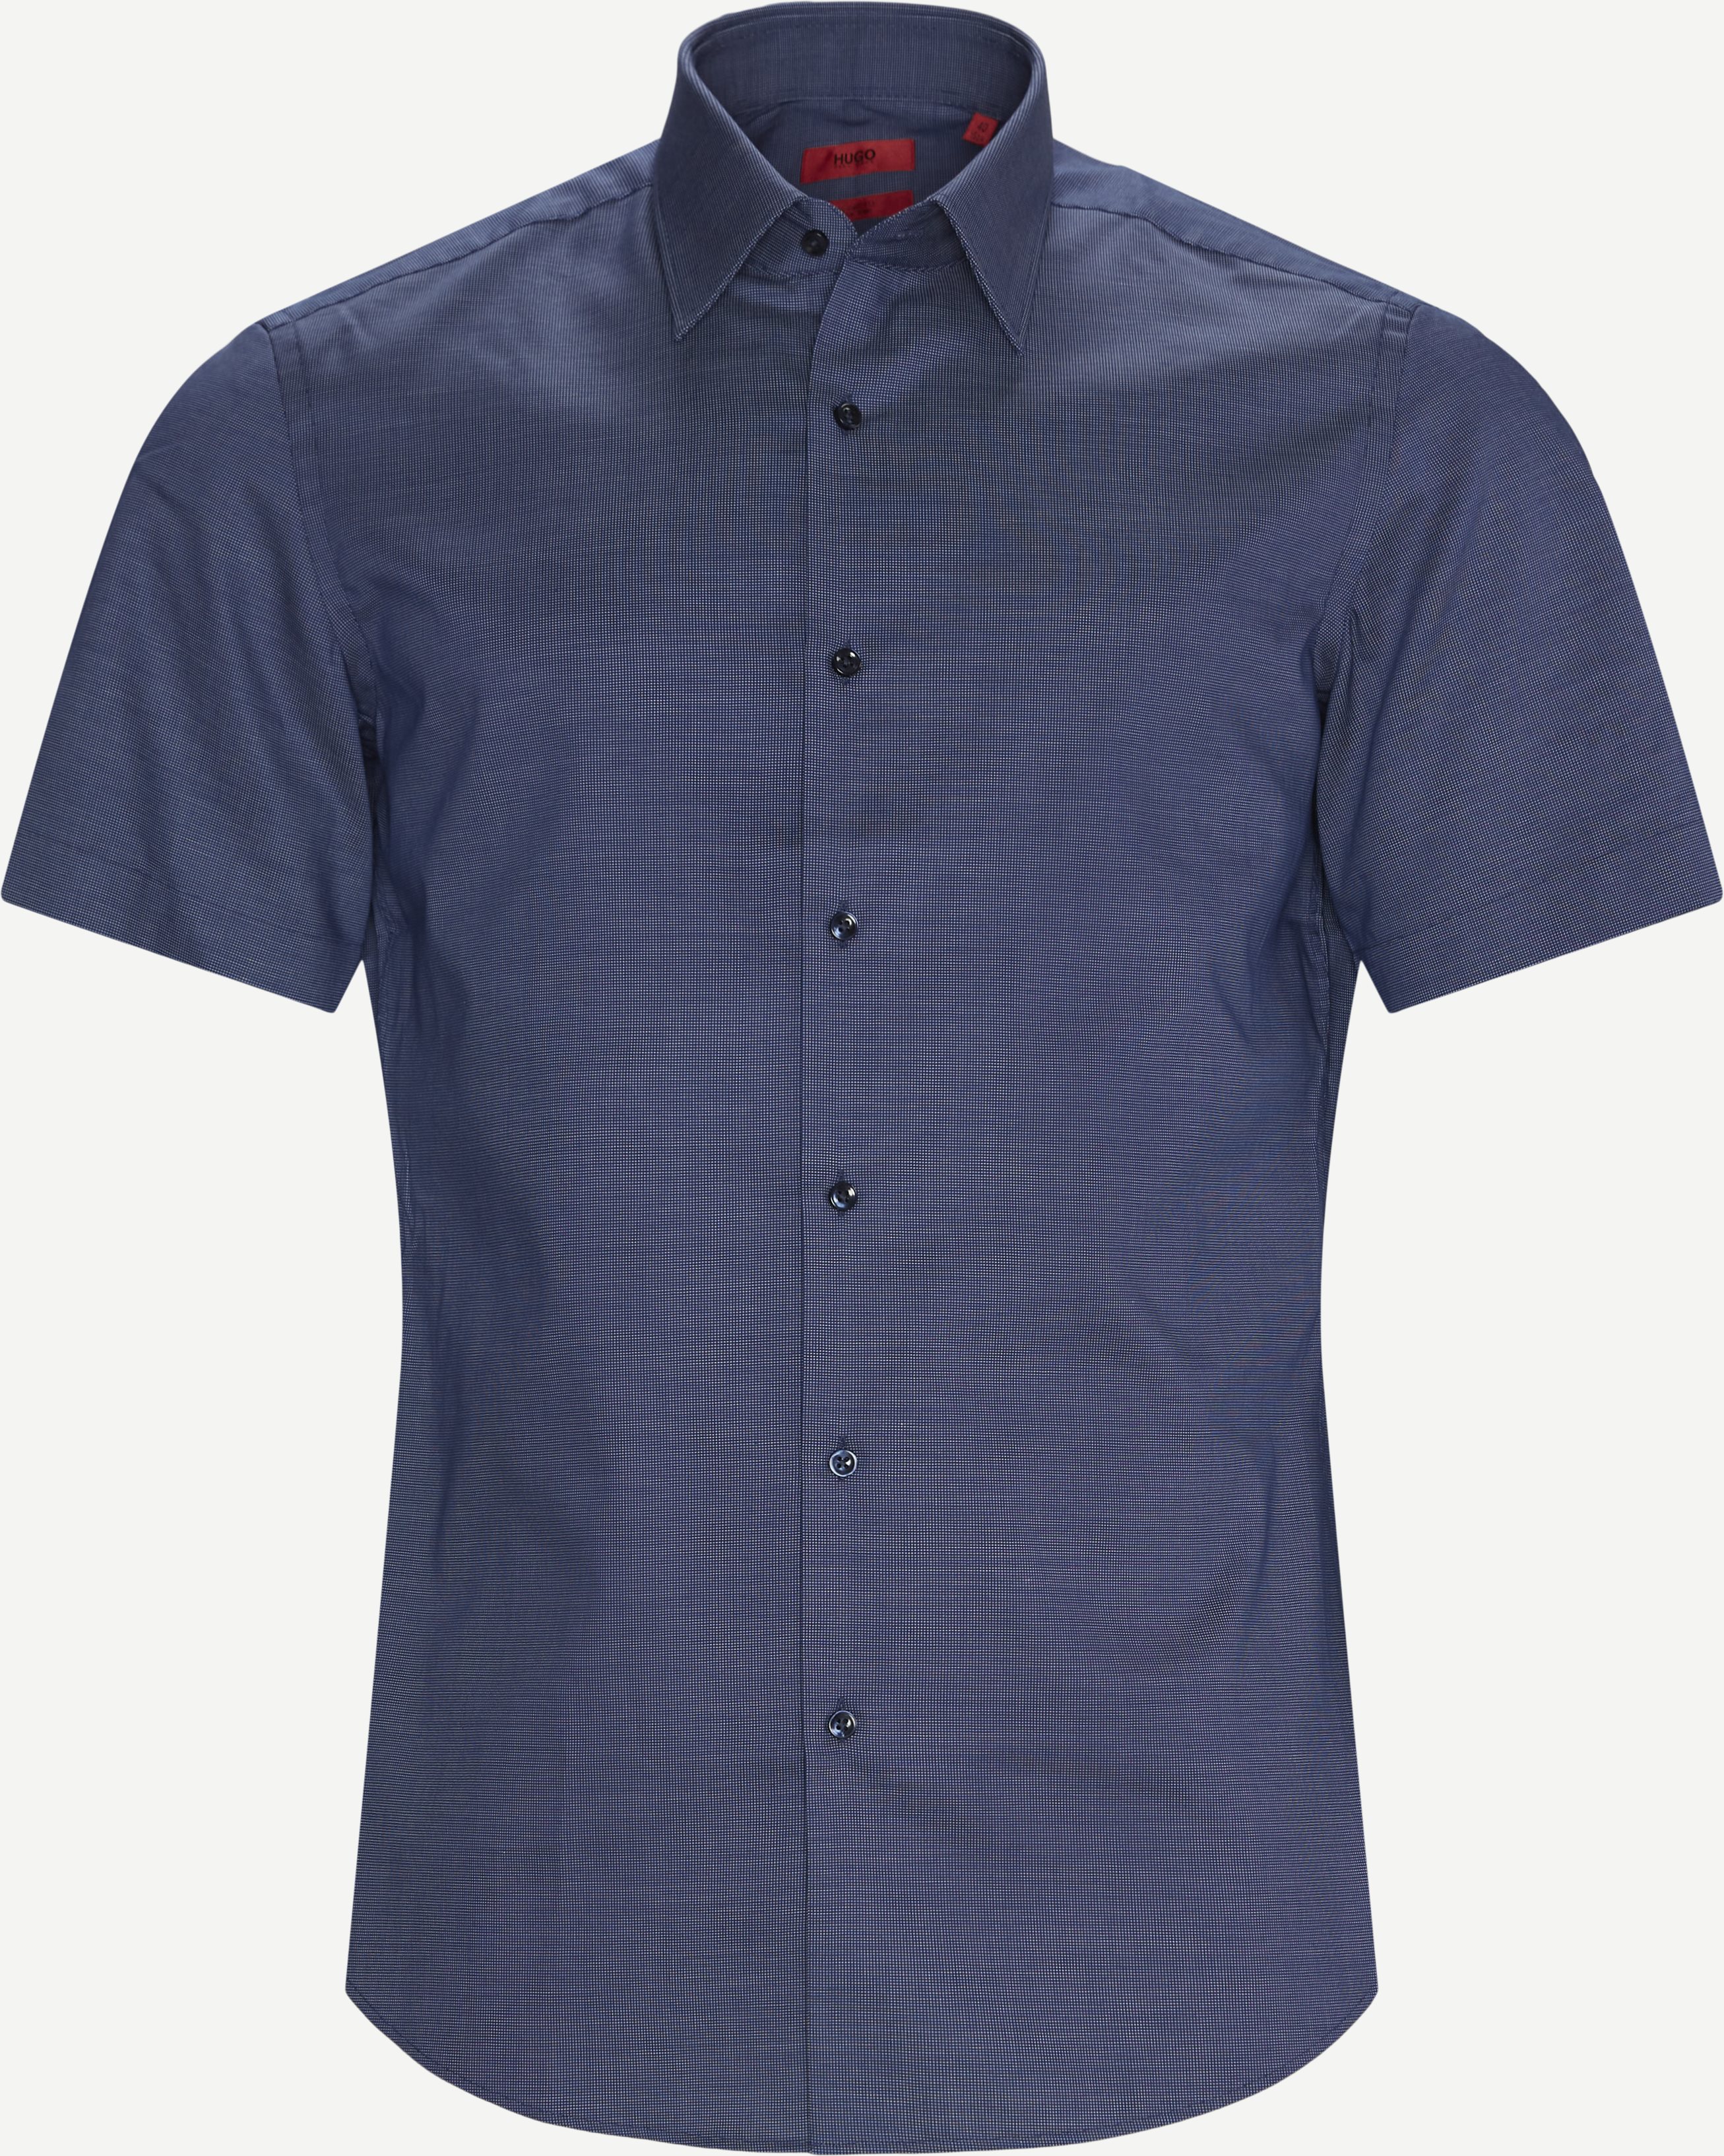 Venzino K/Æ Shirt - Kortærmede skjorter - Regular fit - Blå